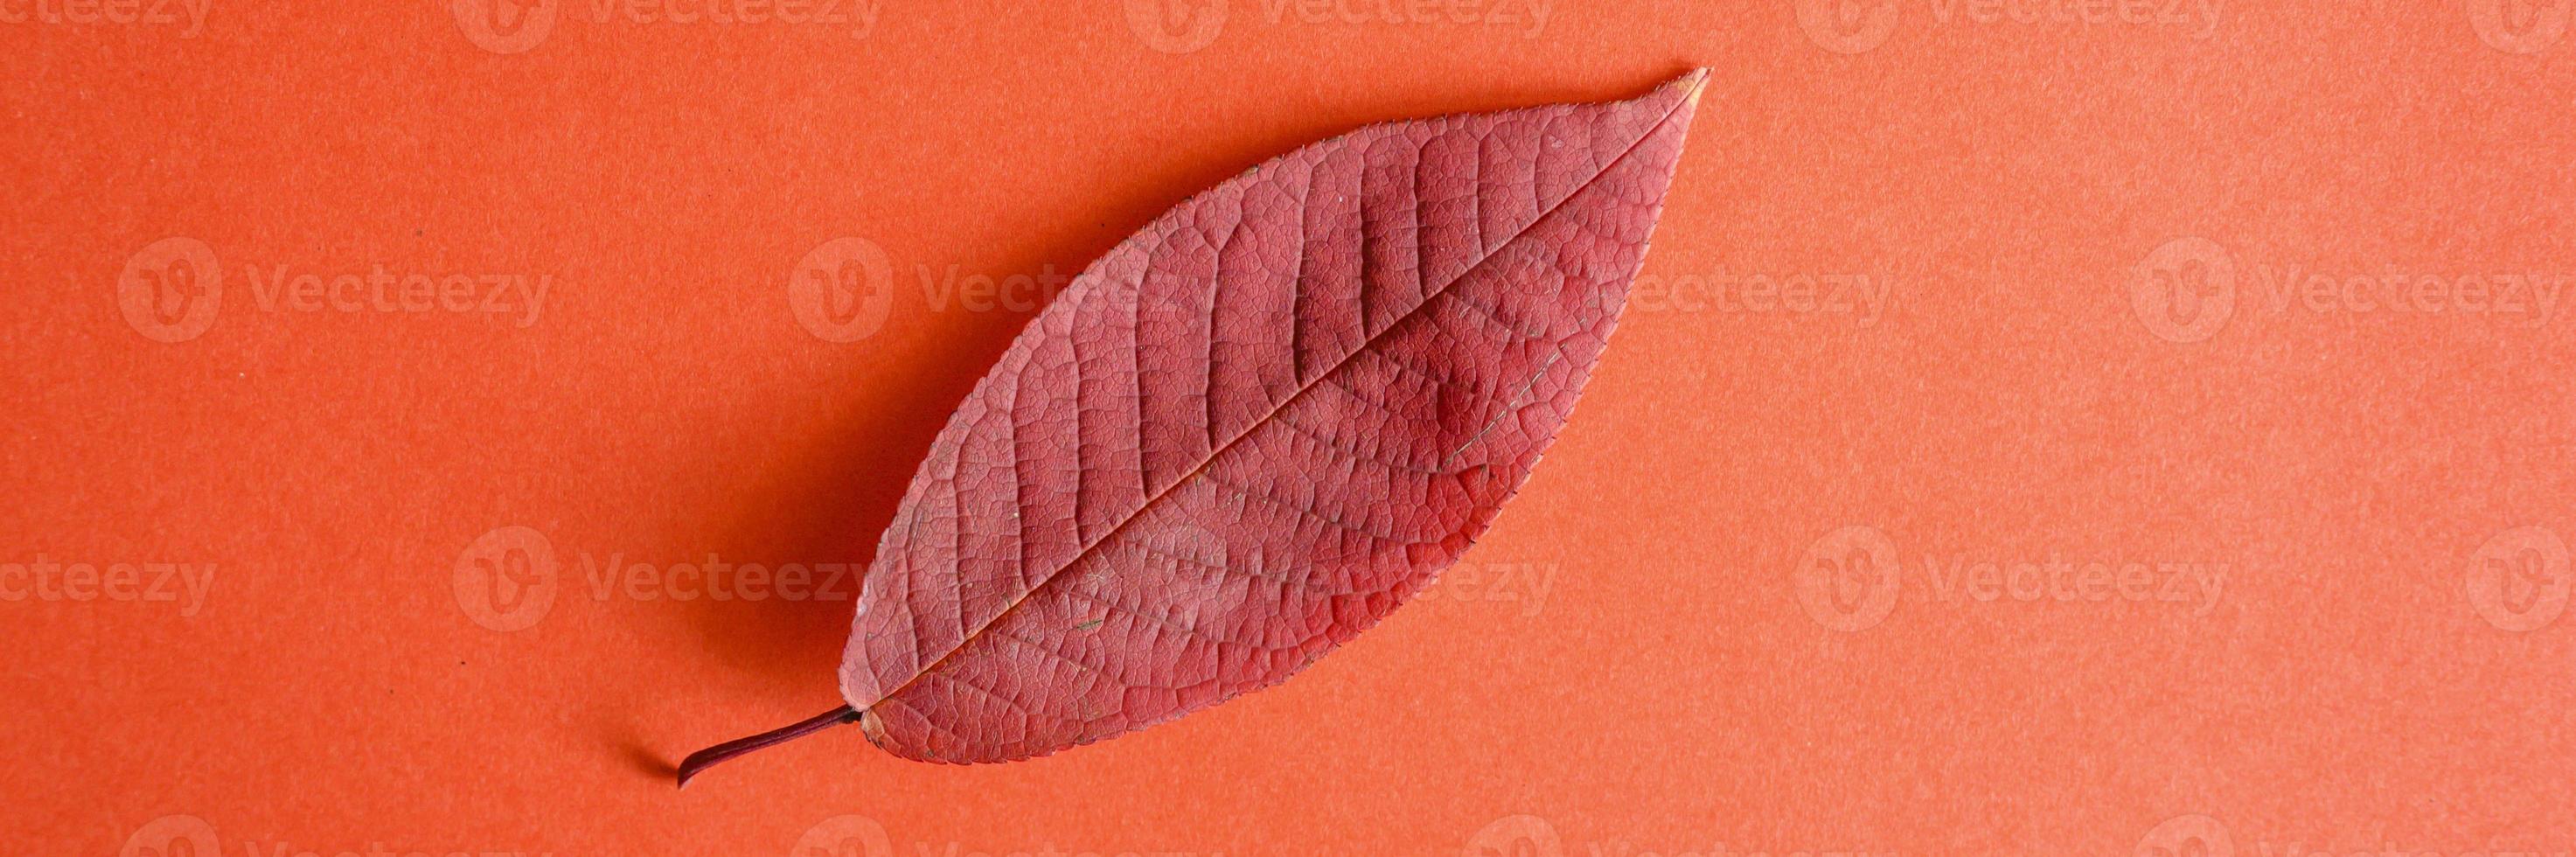 einzelnes rotes gefallenes Herbstkirschblatt auf einem roten Papierhintergrund foto